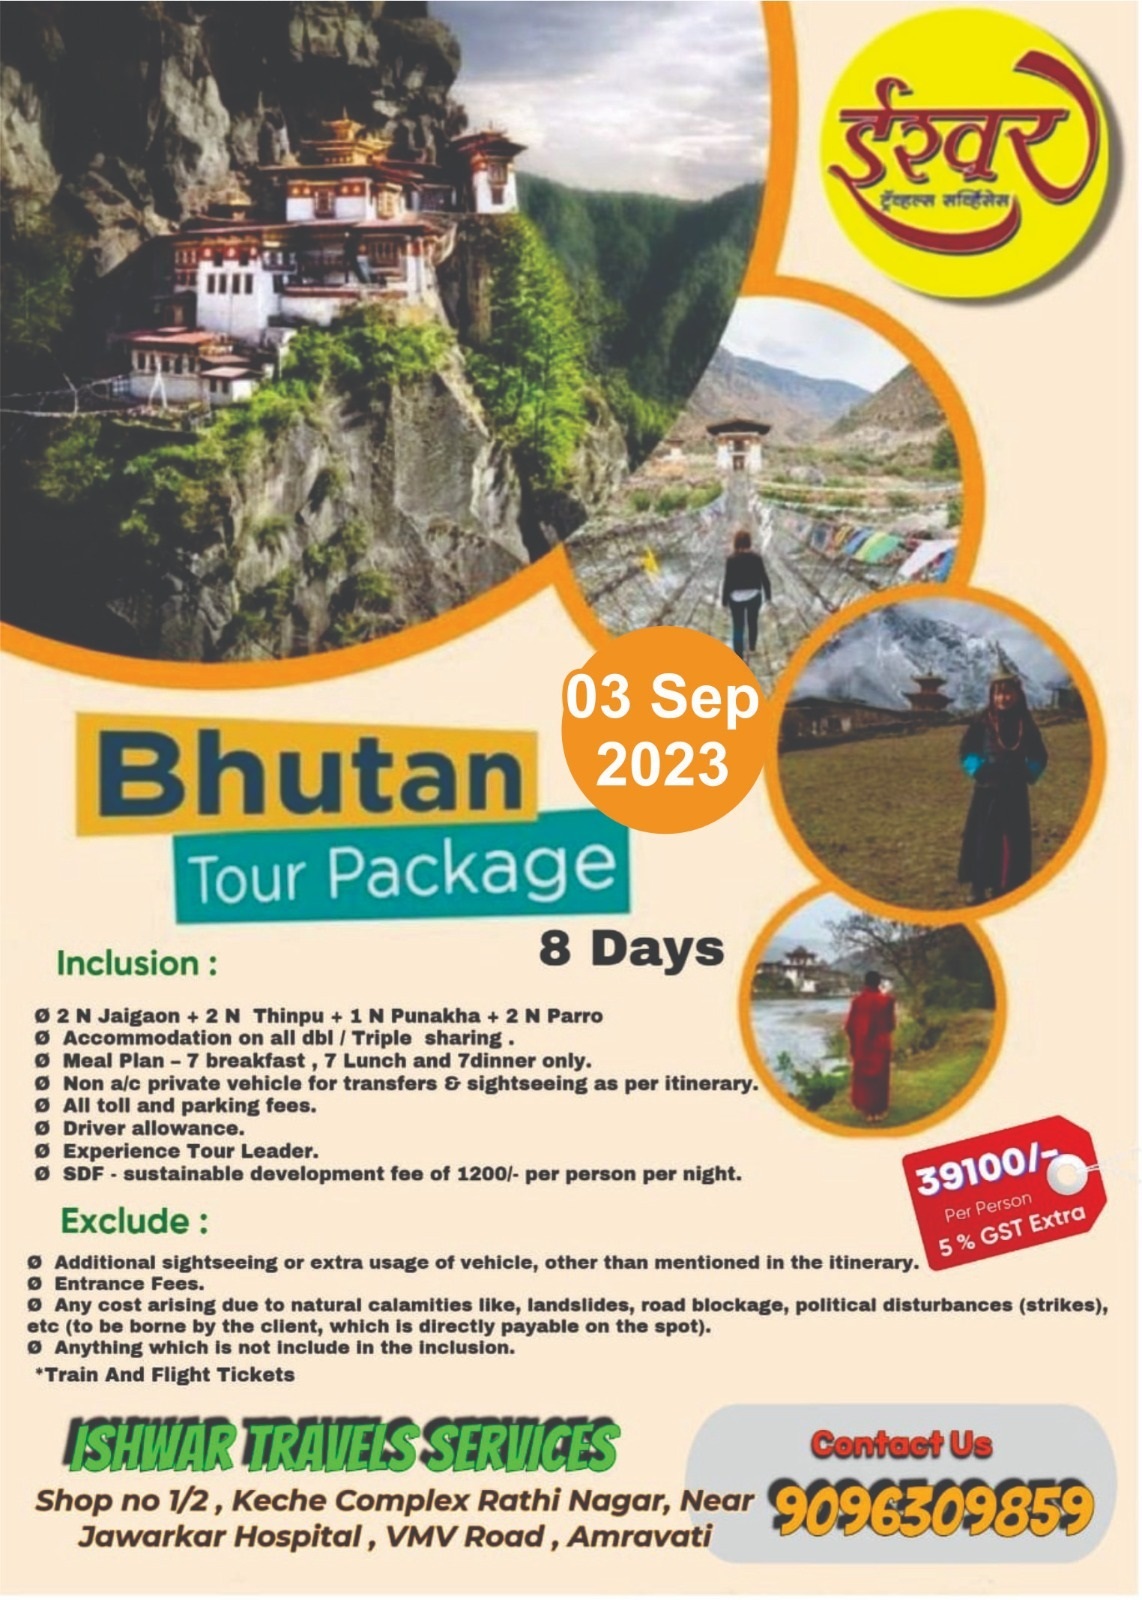 Bhutan Tour Package (03 Sept 2023)